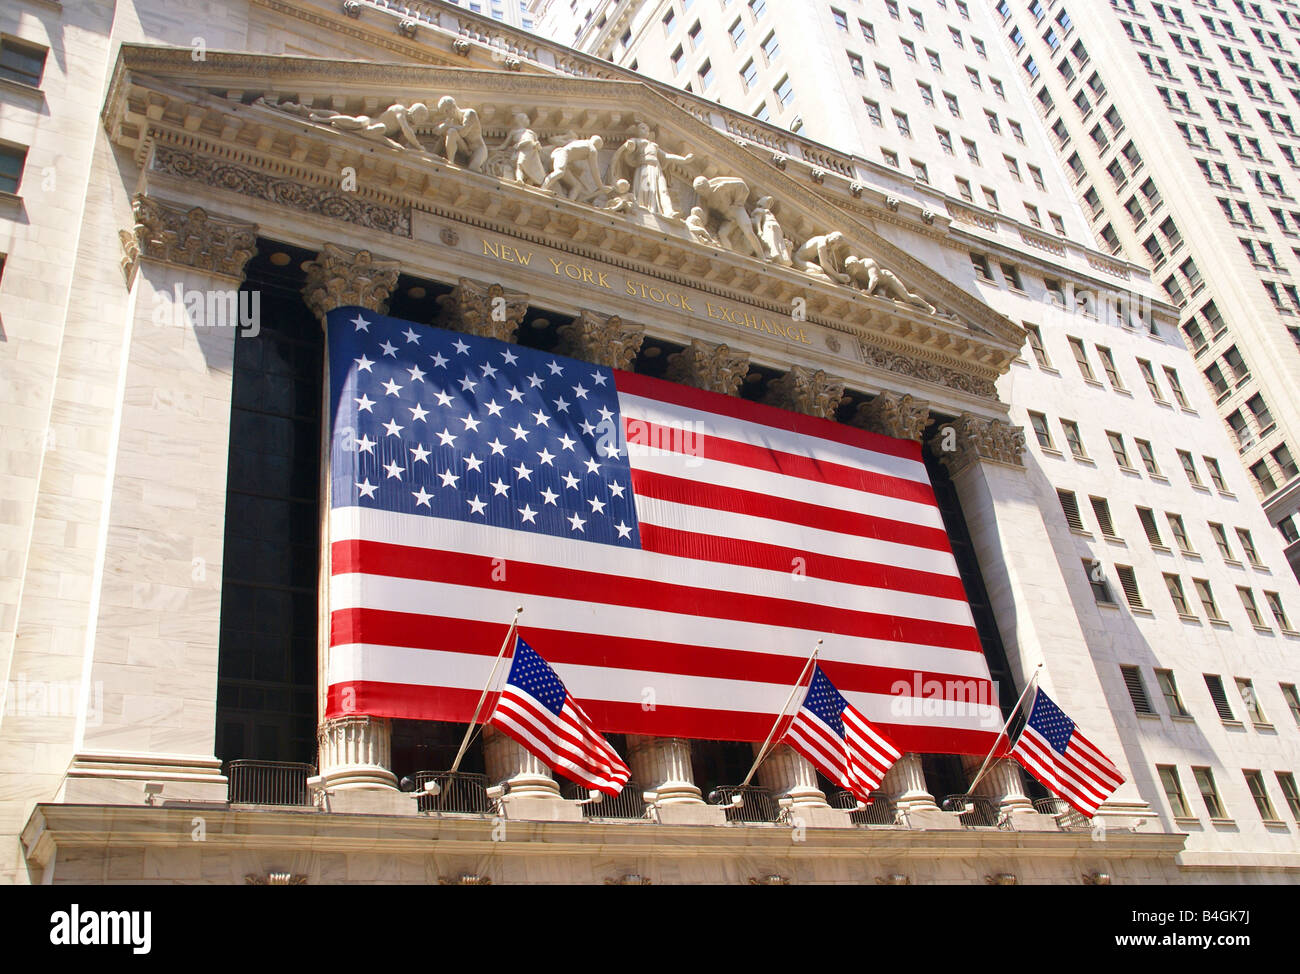 New York Stock Exchange drapé de drapeaux américains quartier financier de Wall Street, New York City Banque D'Images